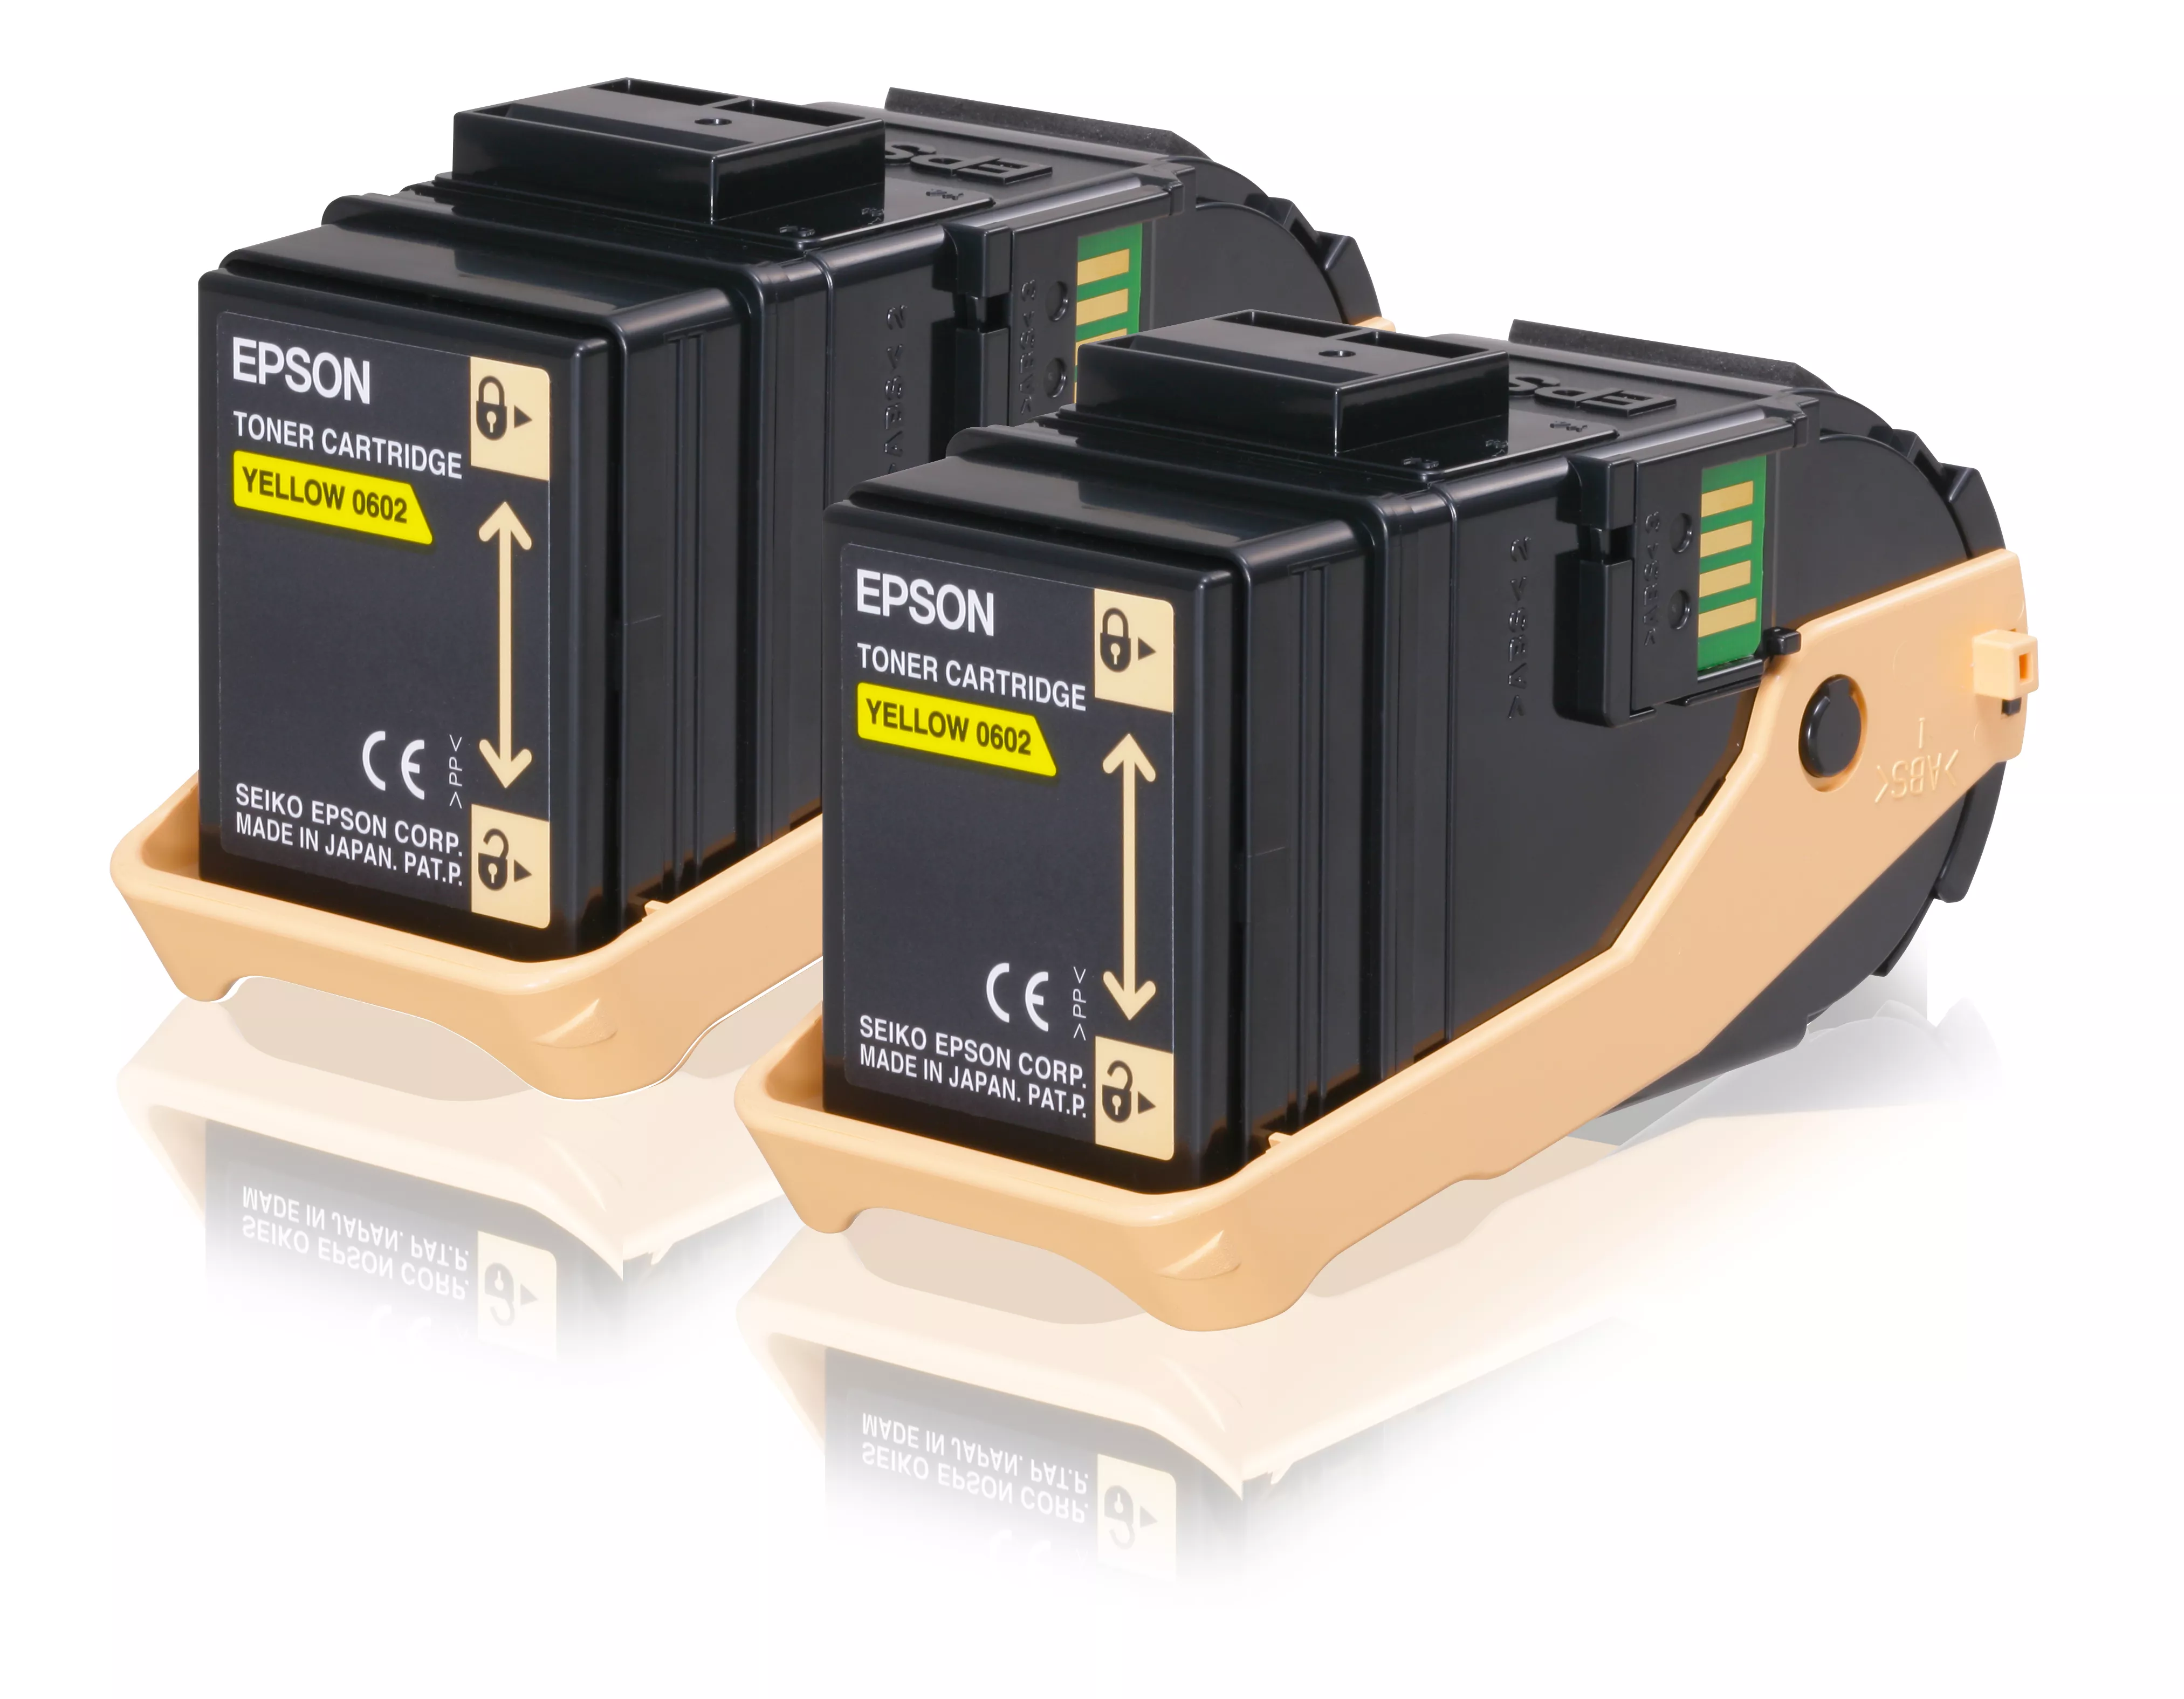 Revendeur officiel Toner EPSON AL-C9300N cartouche de toner jaune capacité